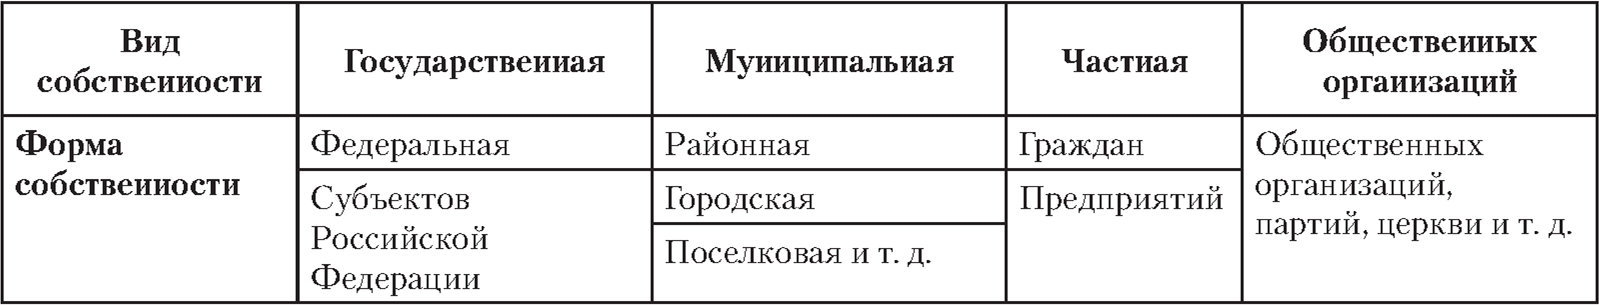 Структура видов и форм собственности в Российской Федерации